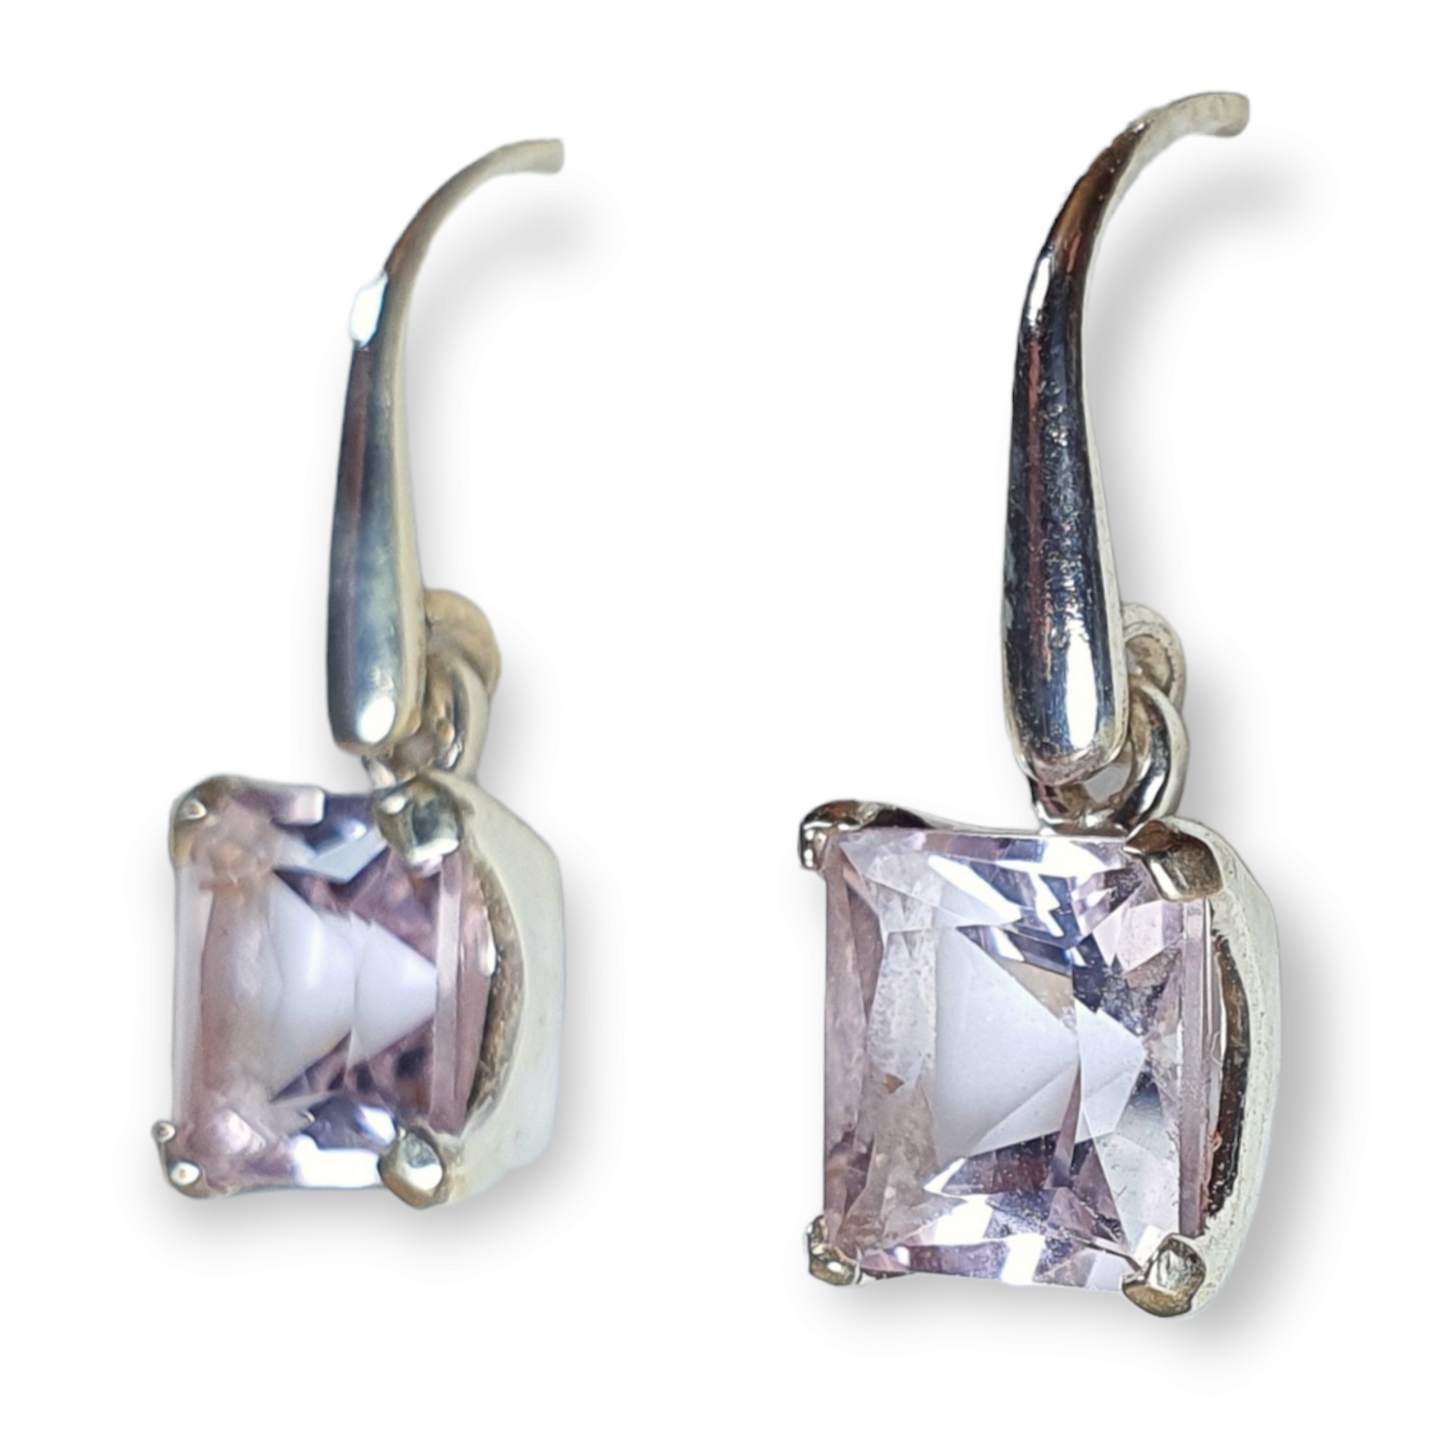 Crystals - Amethyst Drop/Hook Earrings - Sterling Silver